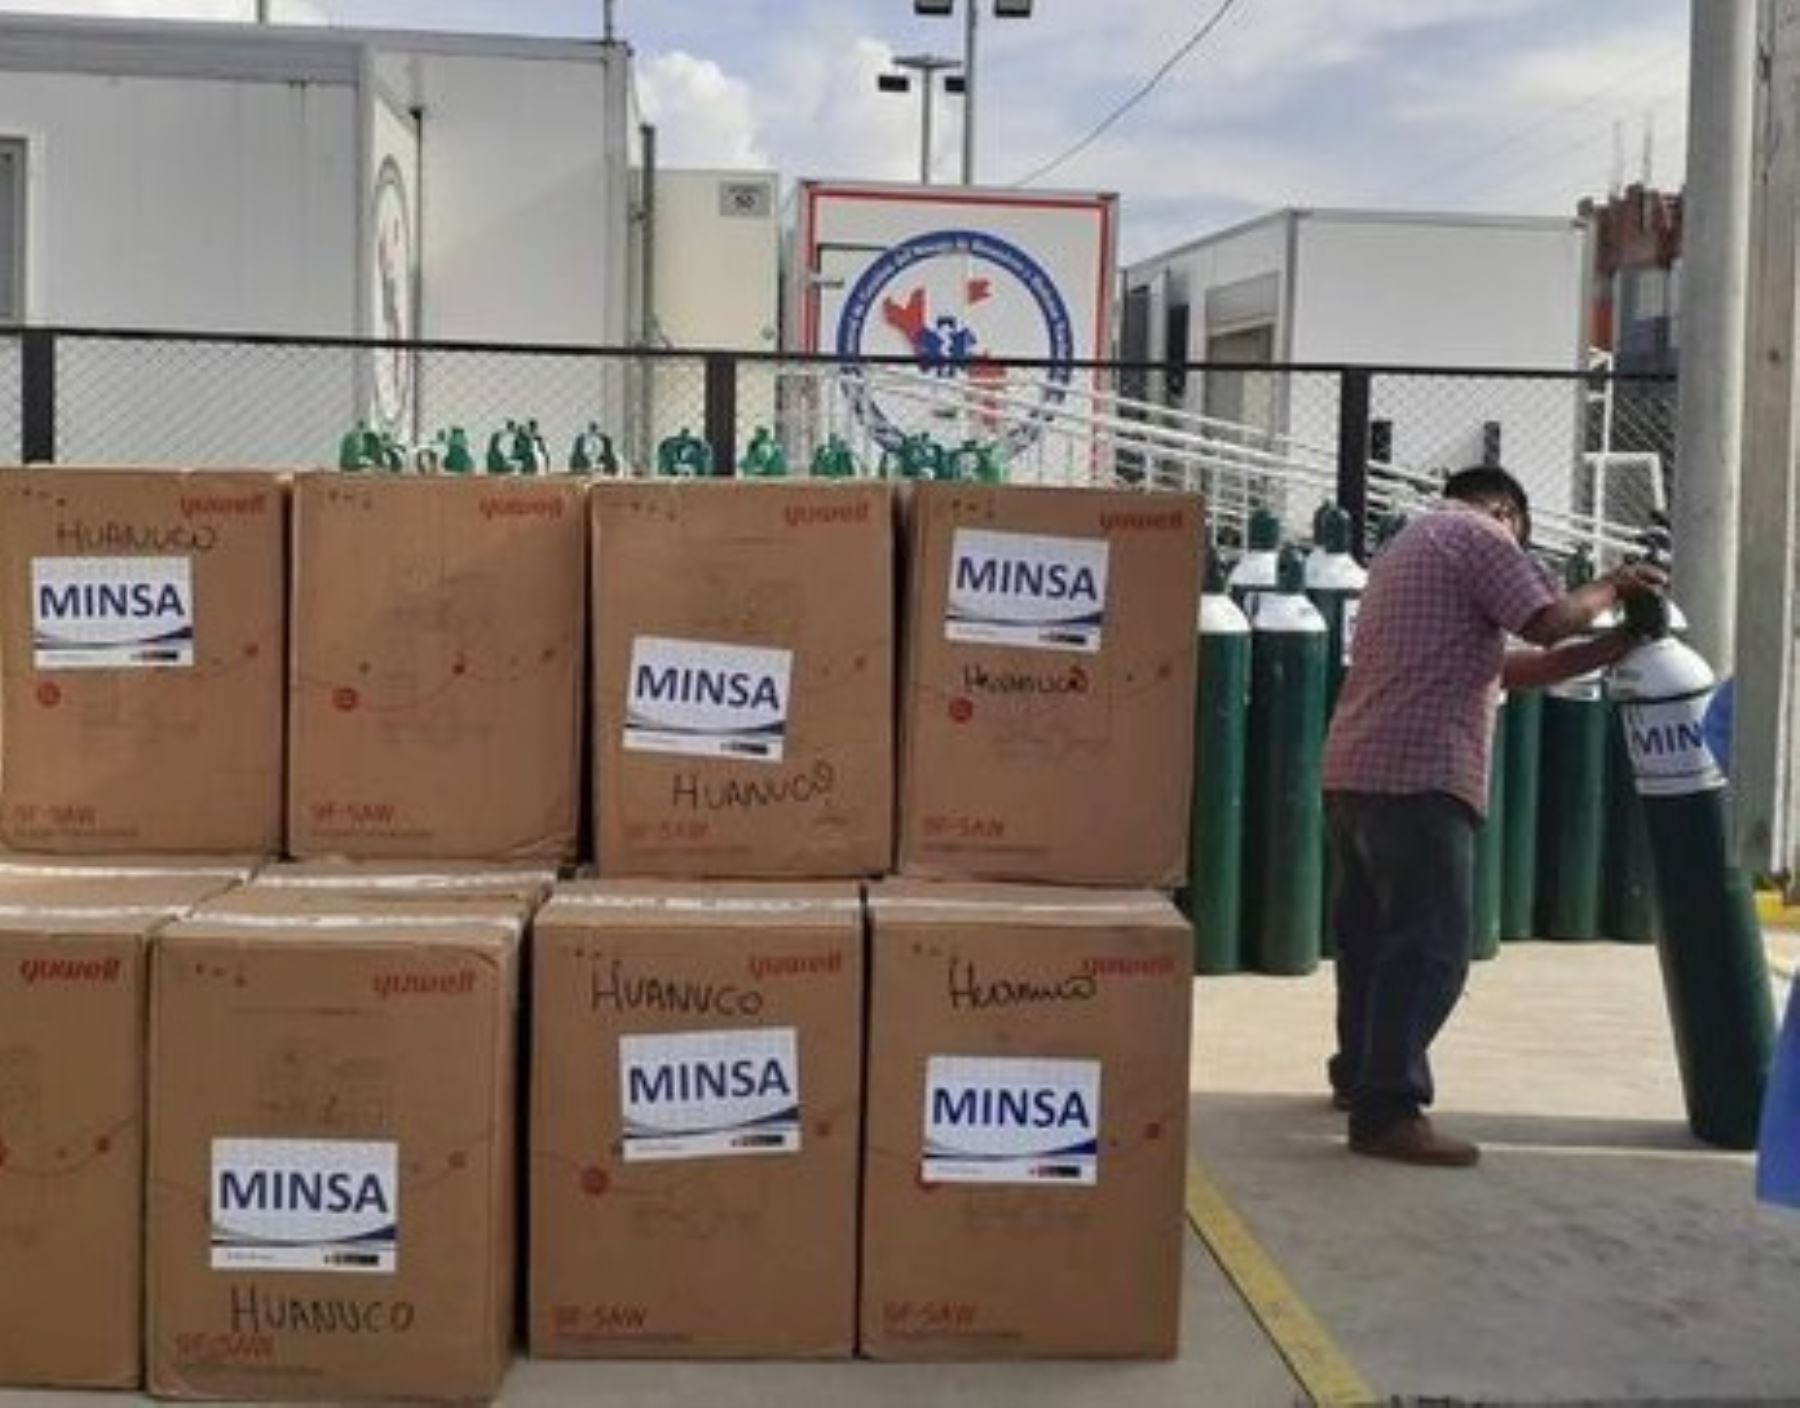 El Minsa destacó que las dotaciones de oxígeno medicinal y ventiladores mecánicos enviados a Huánuco ya entraron en funcionamiento para enfrentar la emergencia por coronavirus (covid-19) en esa región. ANDINA/Difusión